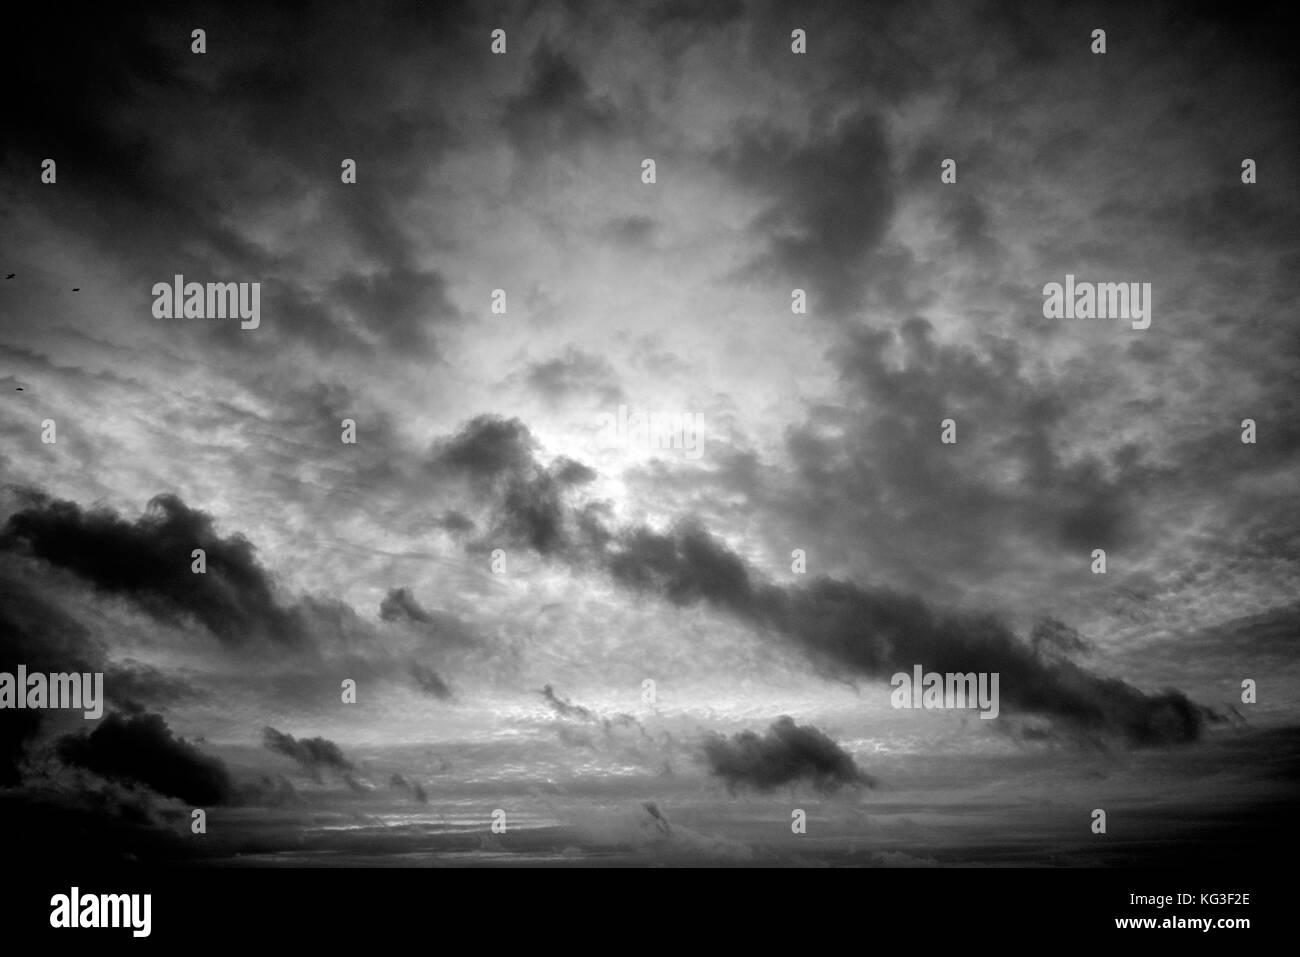 Un oscuro cielo nublado oscurece el fading sun desde la costa atlántica Foto de stock